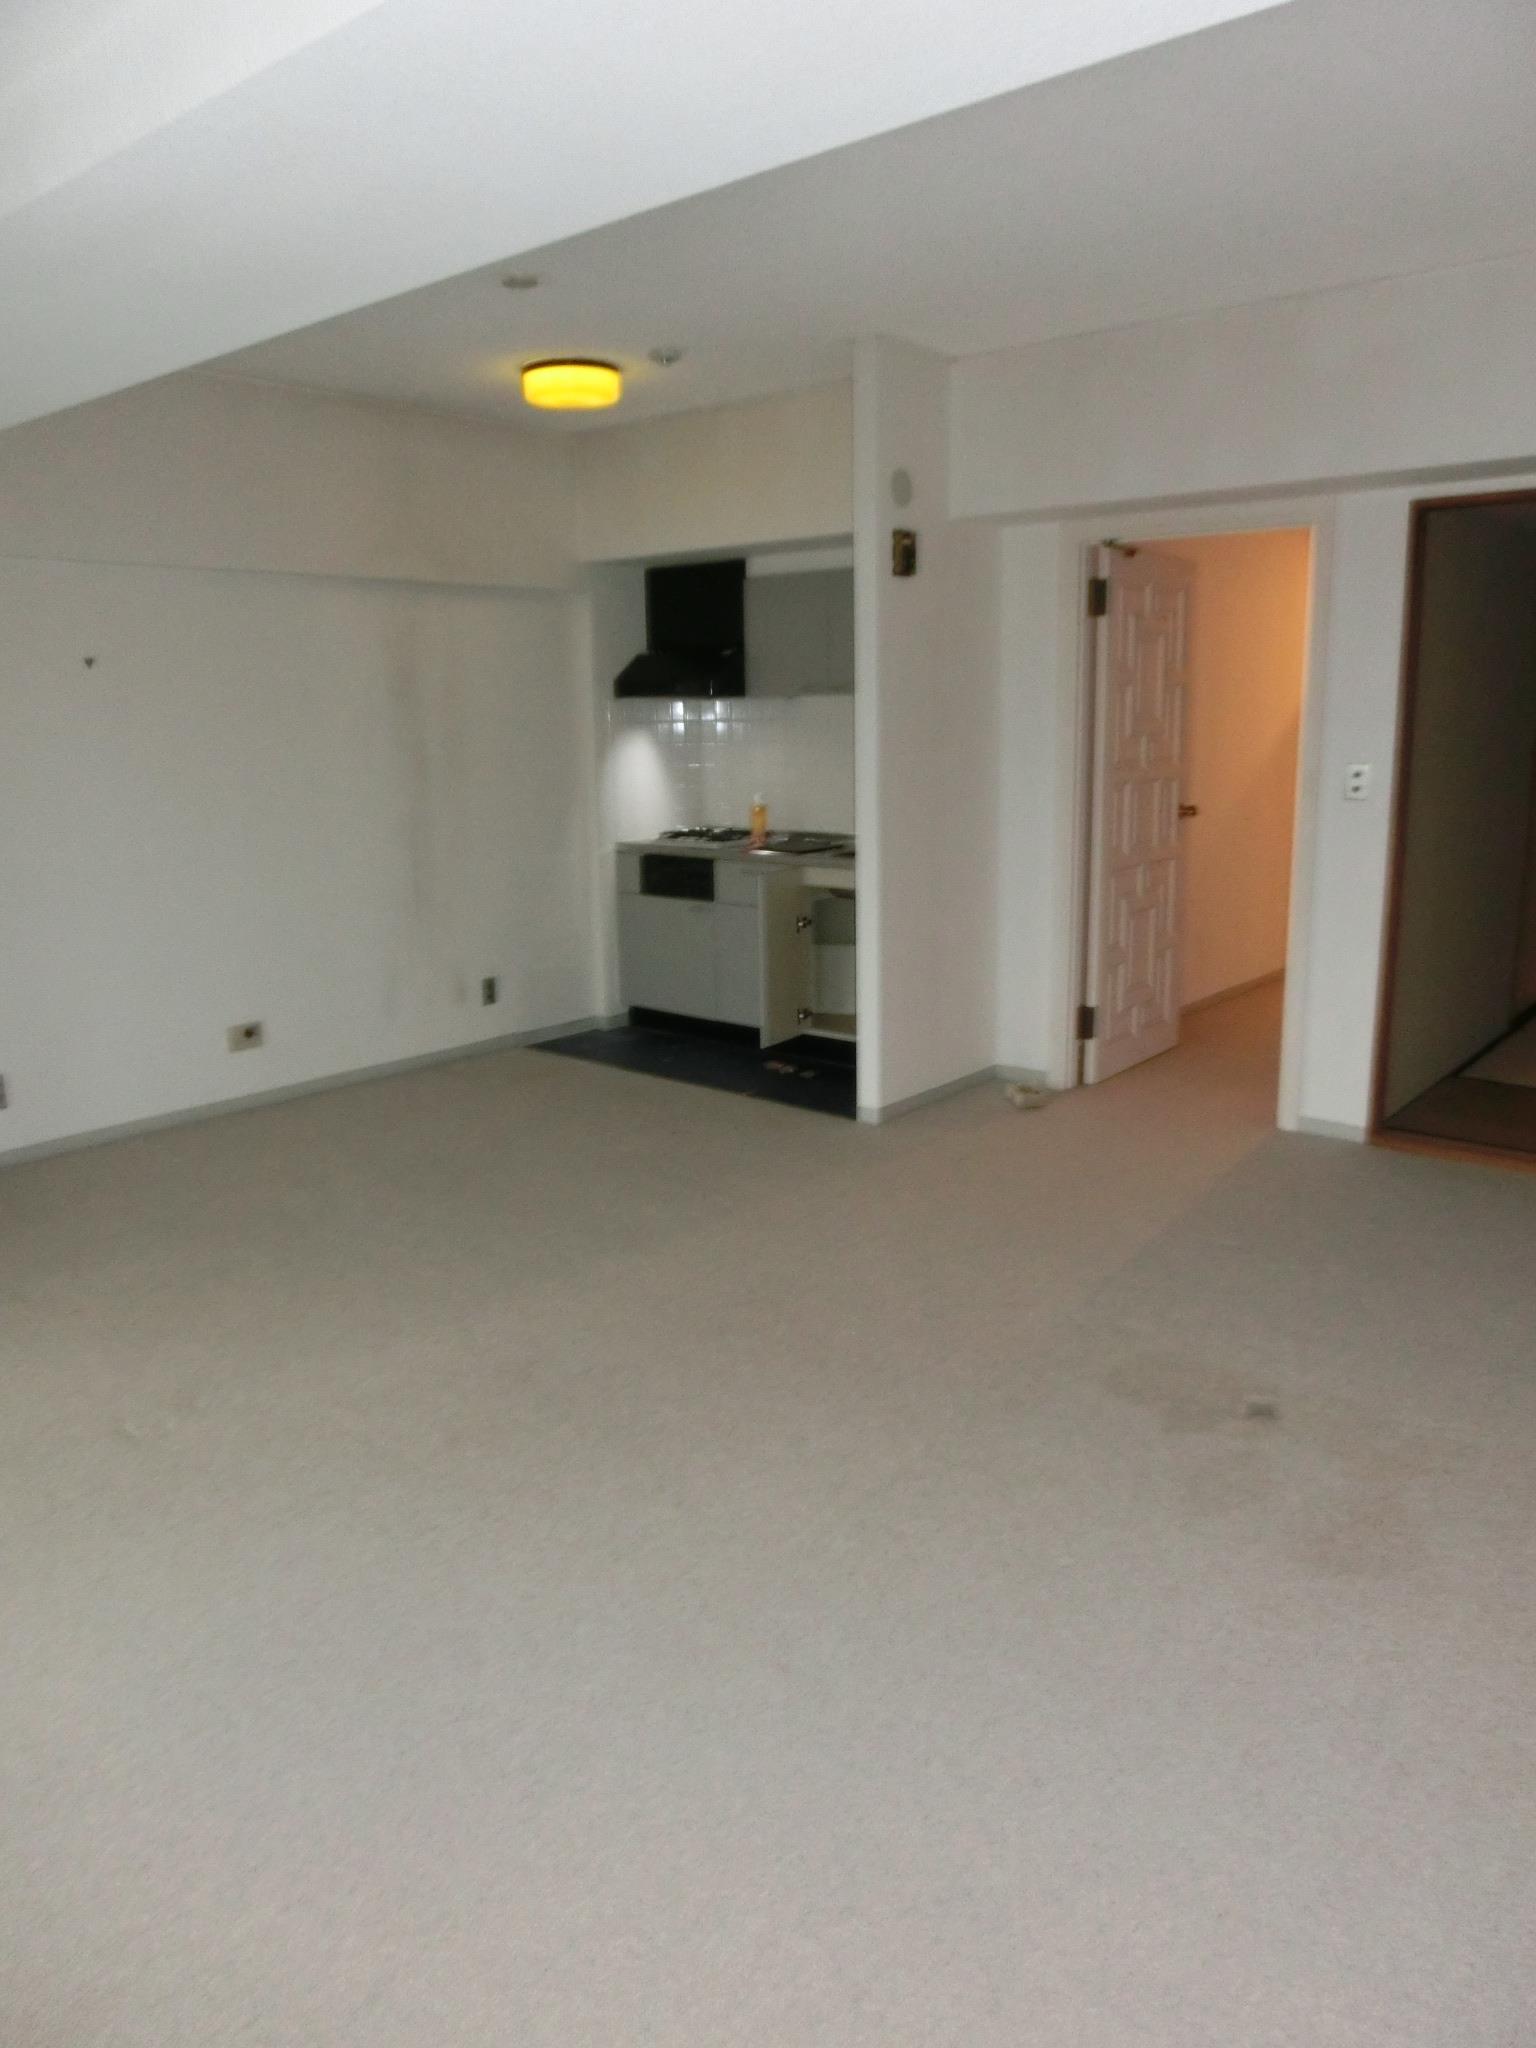 【Before】　リノベーション前のマンションのLDKには絨毯が敷かれ、ミニキッチンが設置されていました。